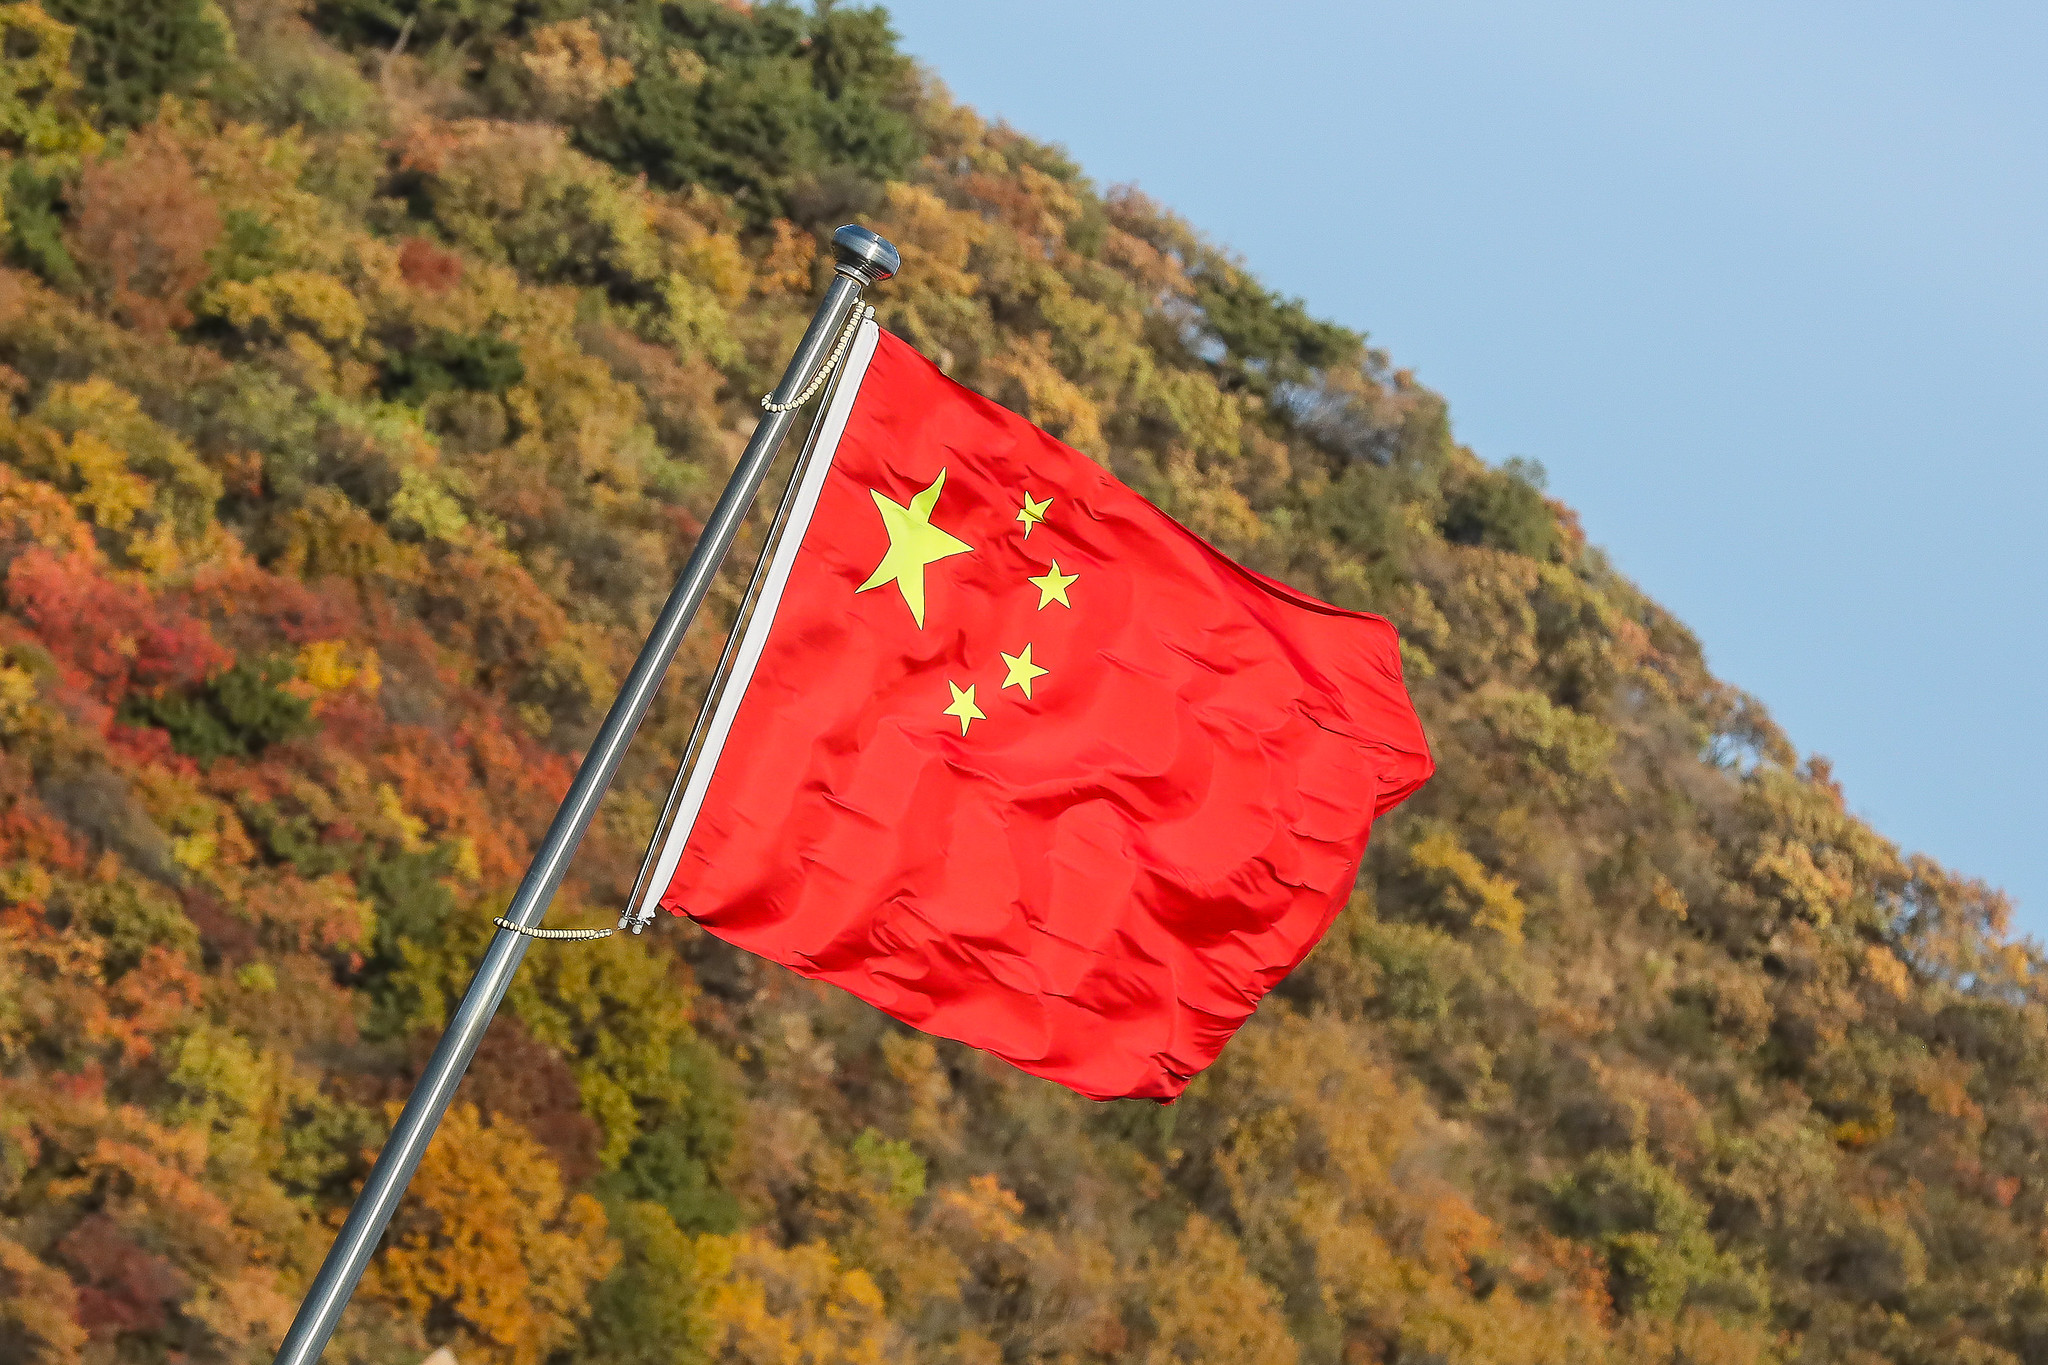 Bandeira da China hasteada e tremulando ao vendo na Grande Muralha, próximo a Pequim; ao fundo montanha coberta por vegetação e céu azul claro (Foto: Isac Nóbrega/PR)